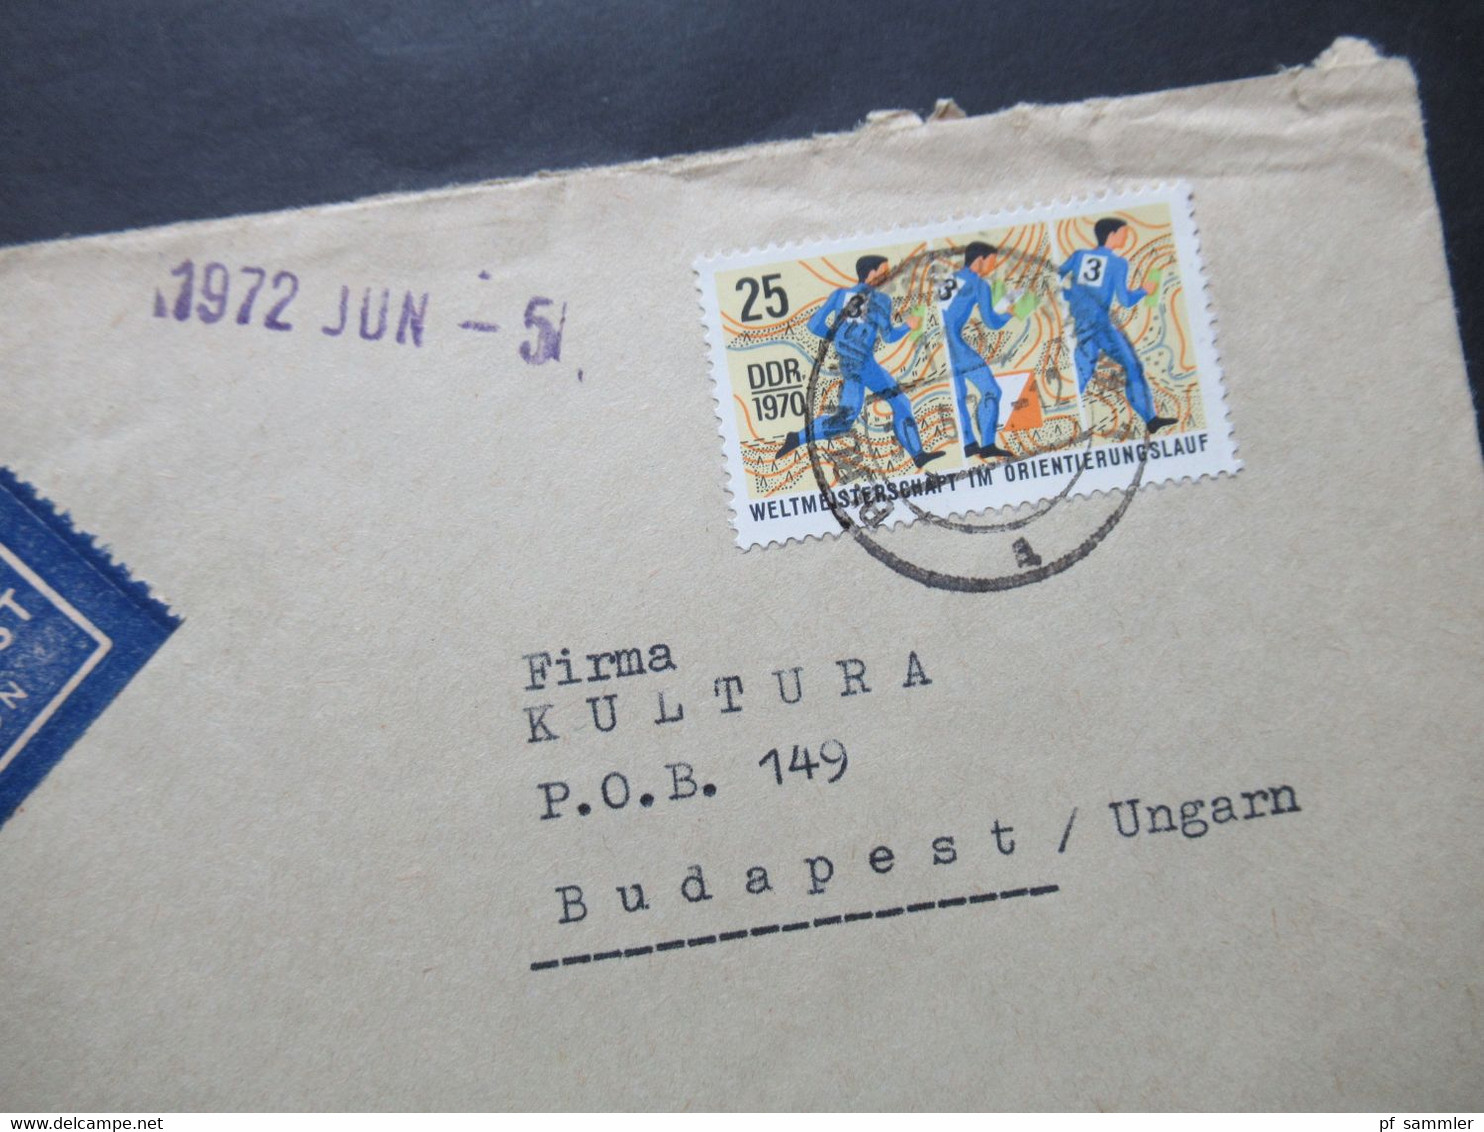 DDR 1972 2 Auslandsbriefe Nach Ungarn 1x Luftpost Umschläge VEB Deutsche Schallplatten / Bereich Absatz Usw. - Covers & Documents